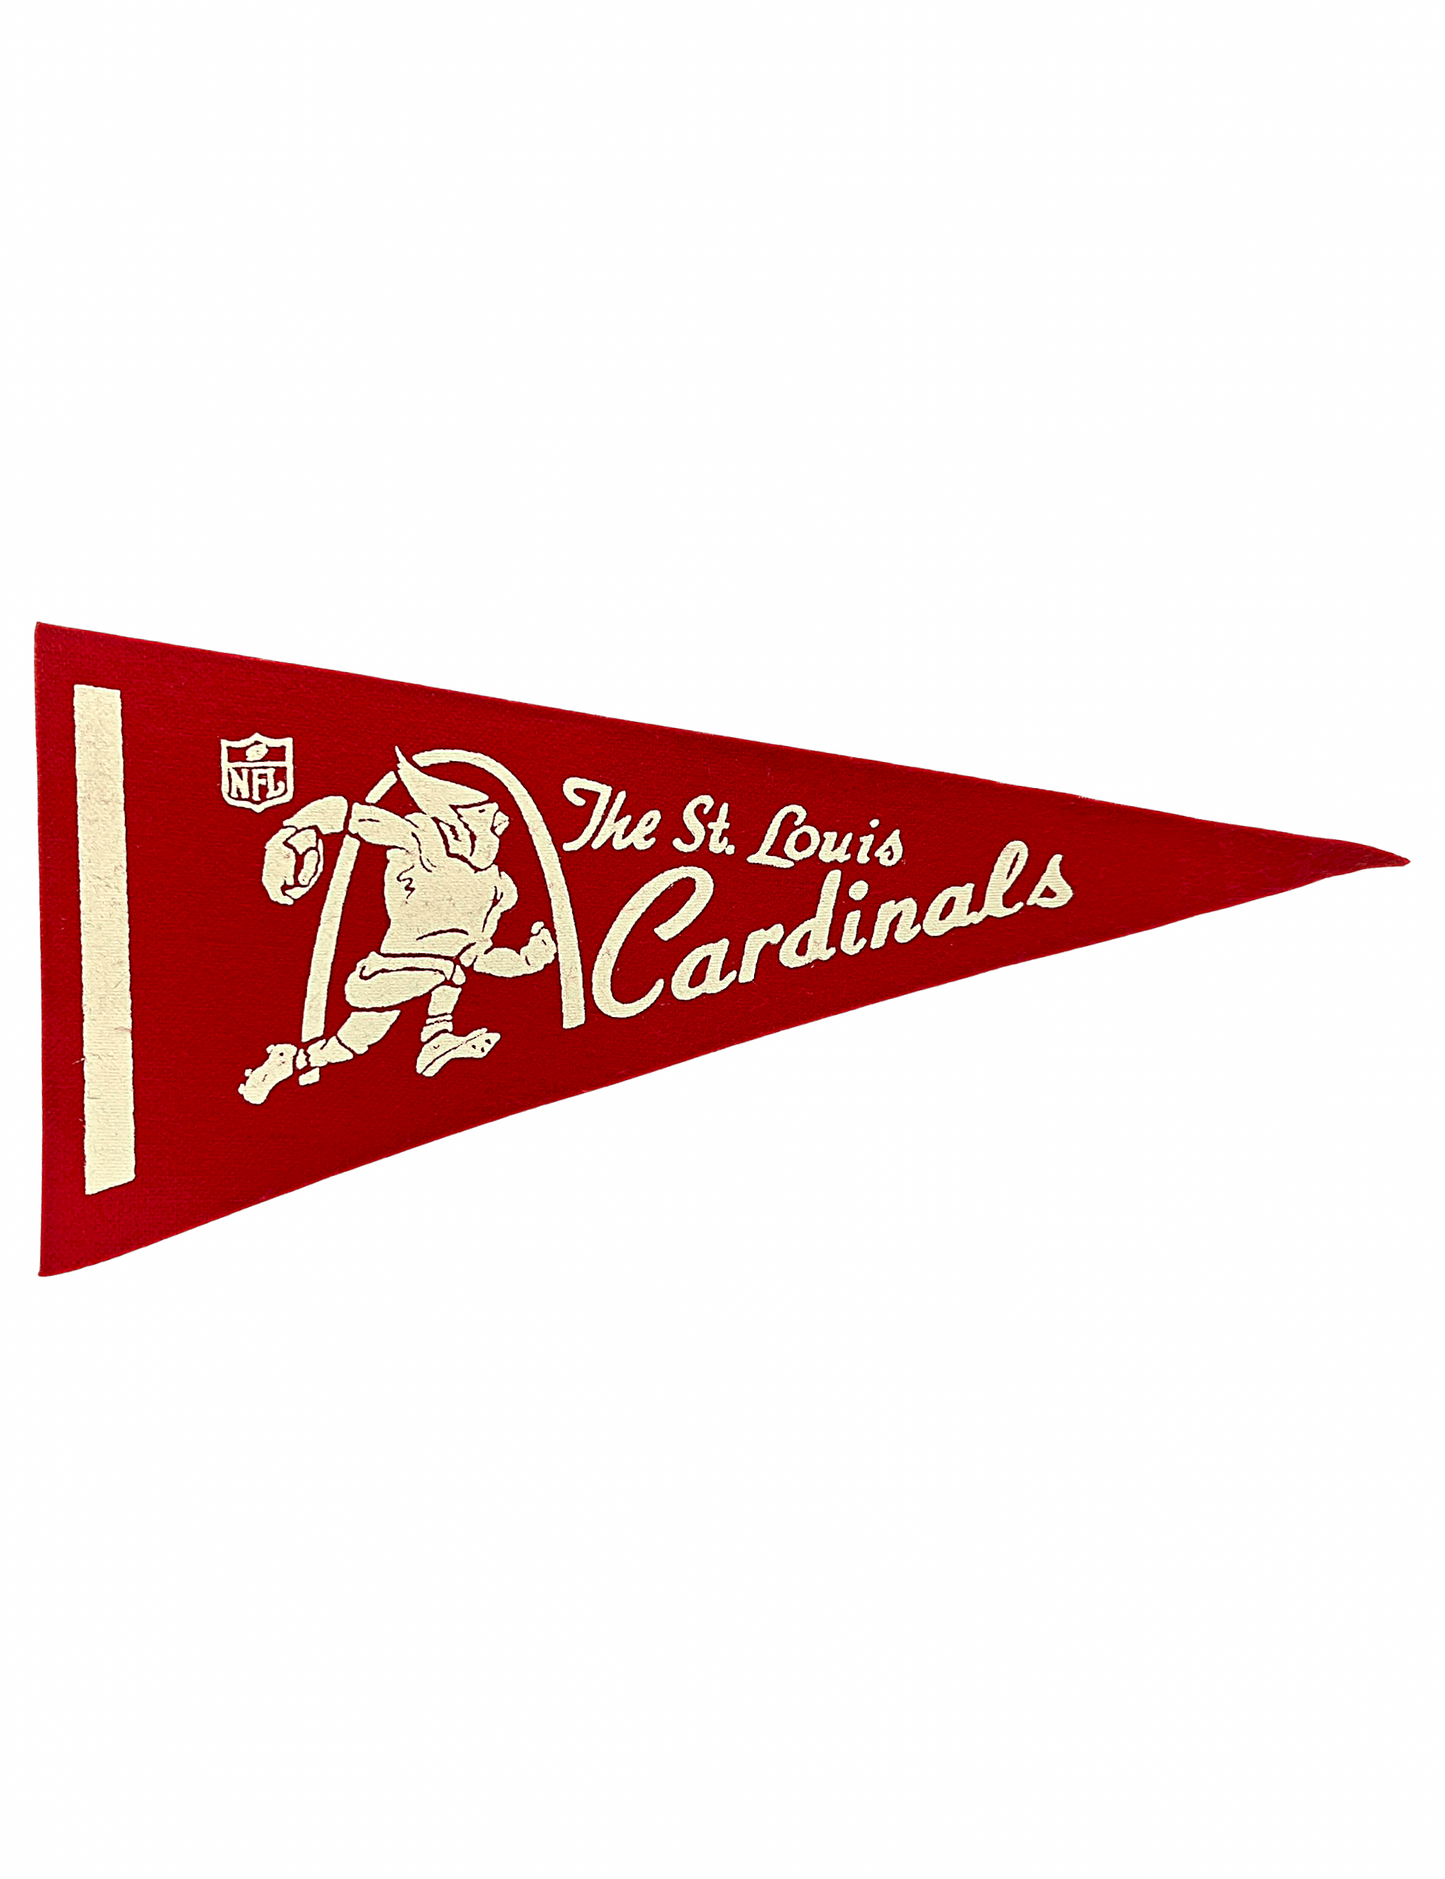 Vintage St. Louis Cardinals Mini Football Felt Pennant 4.25” x 9”